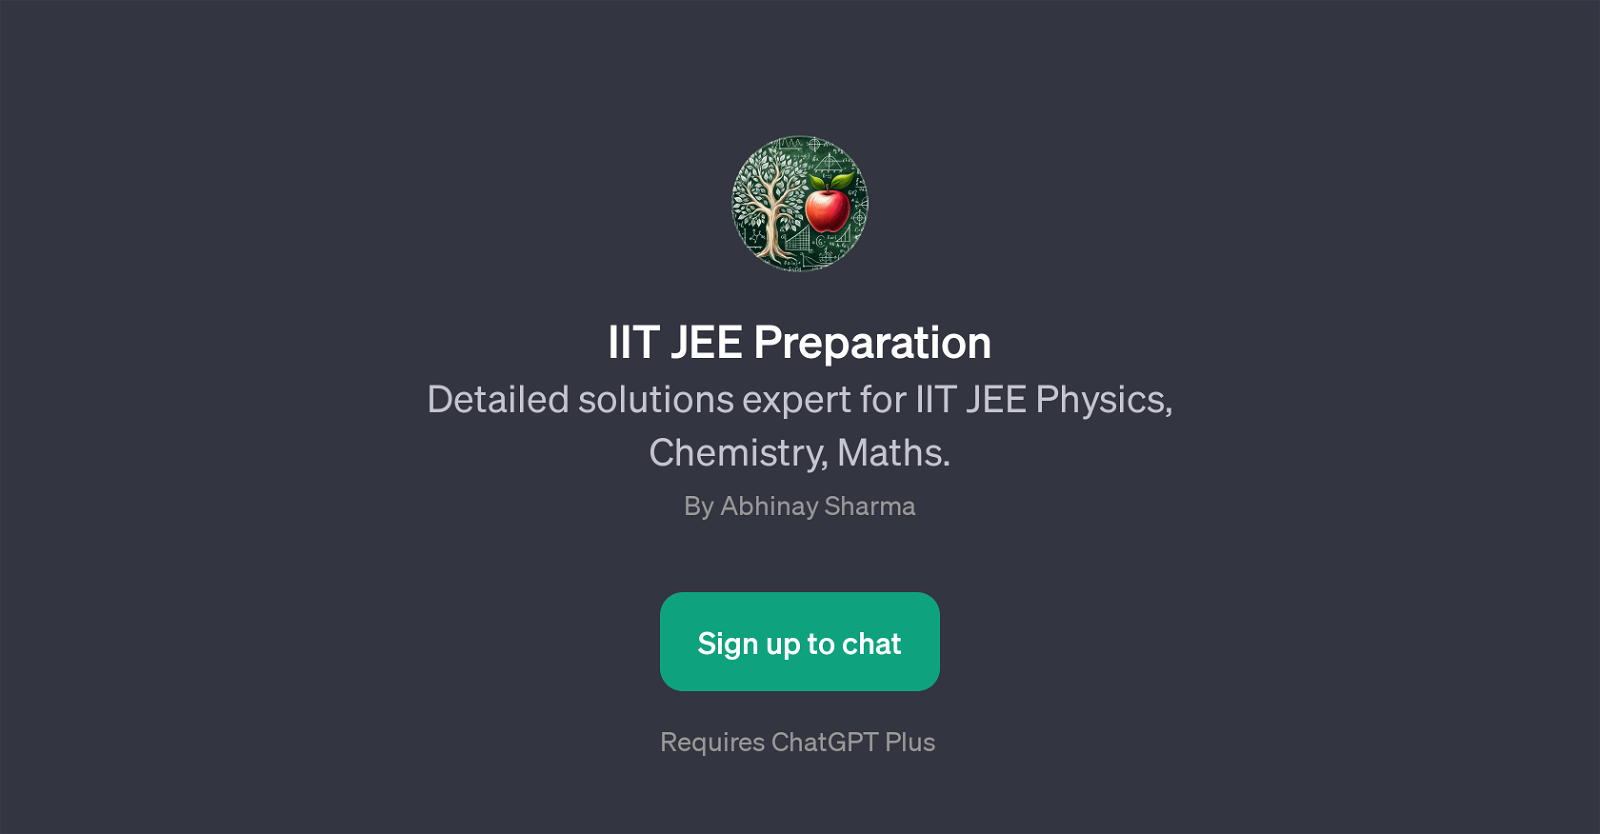 IIT JEE Preparation website